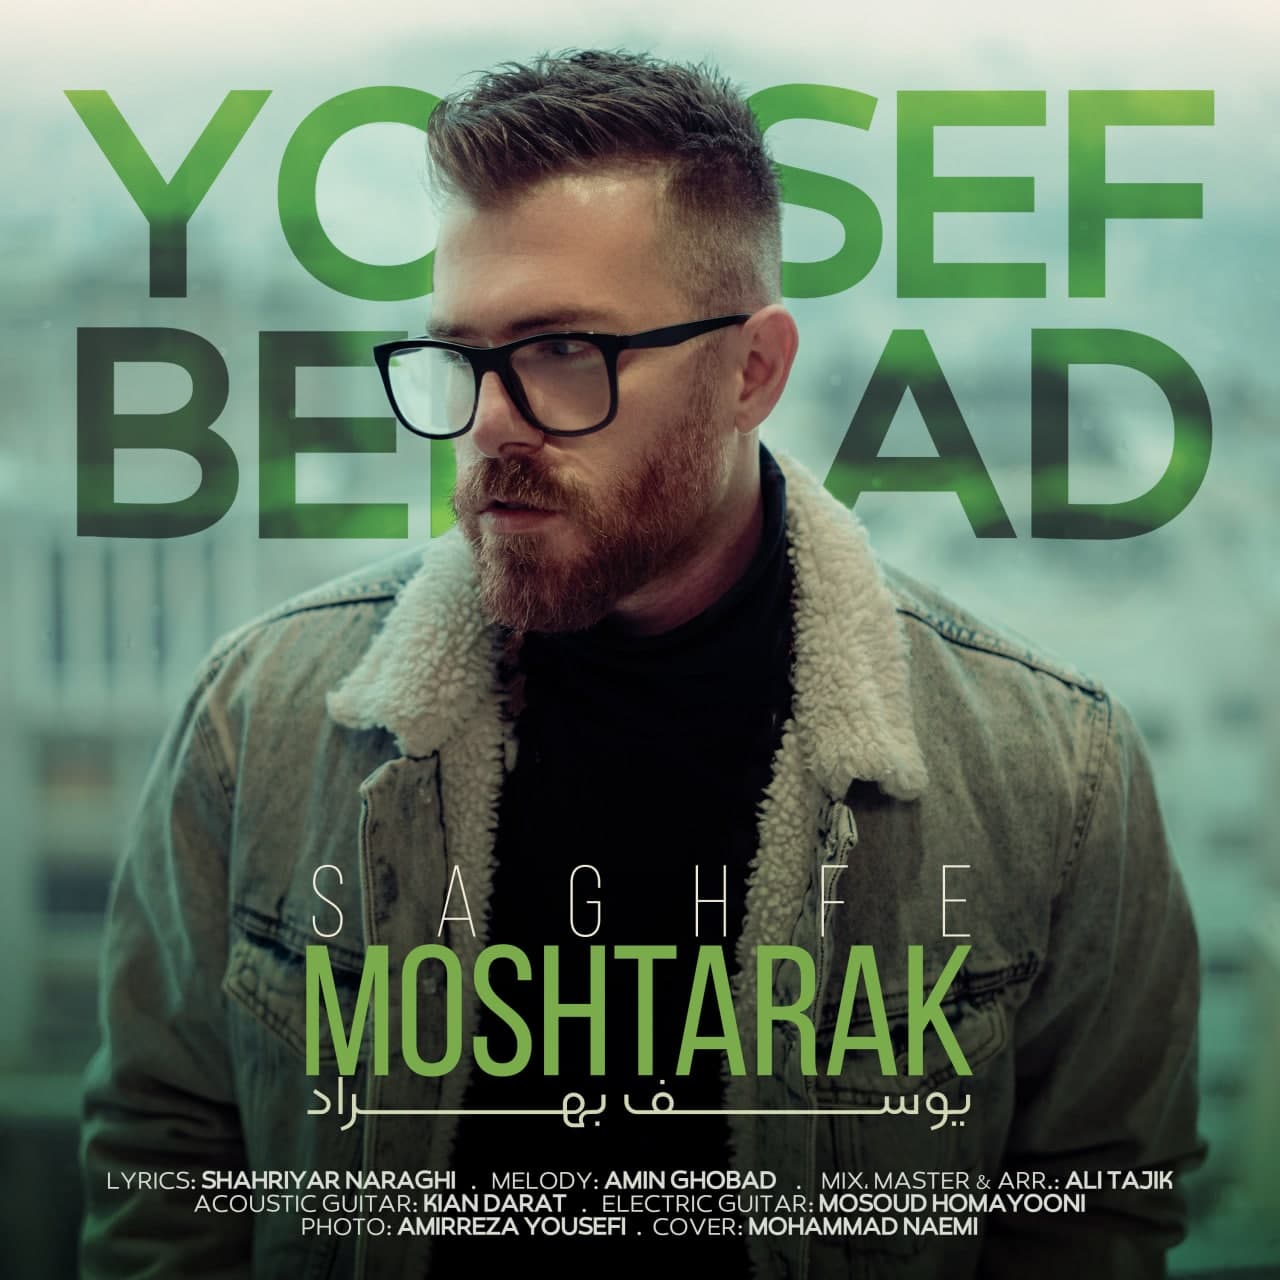 Yousef Behrad – Moshtarak